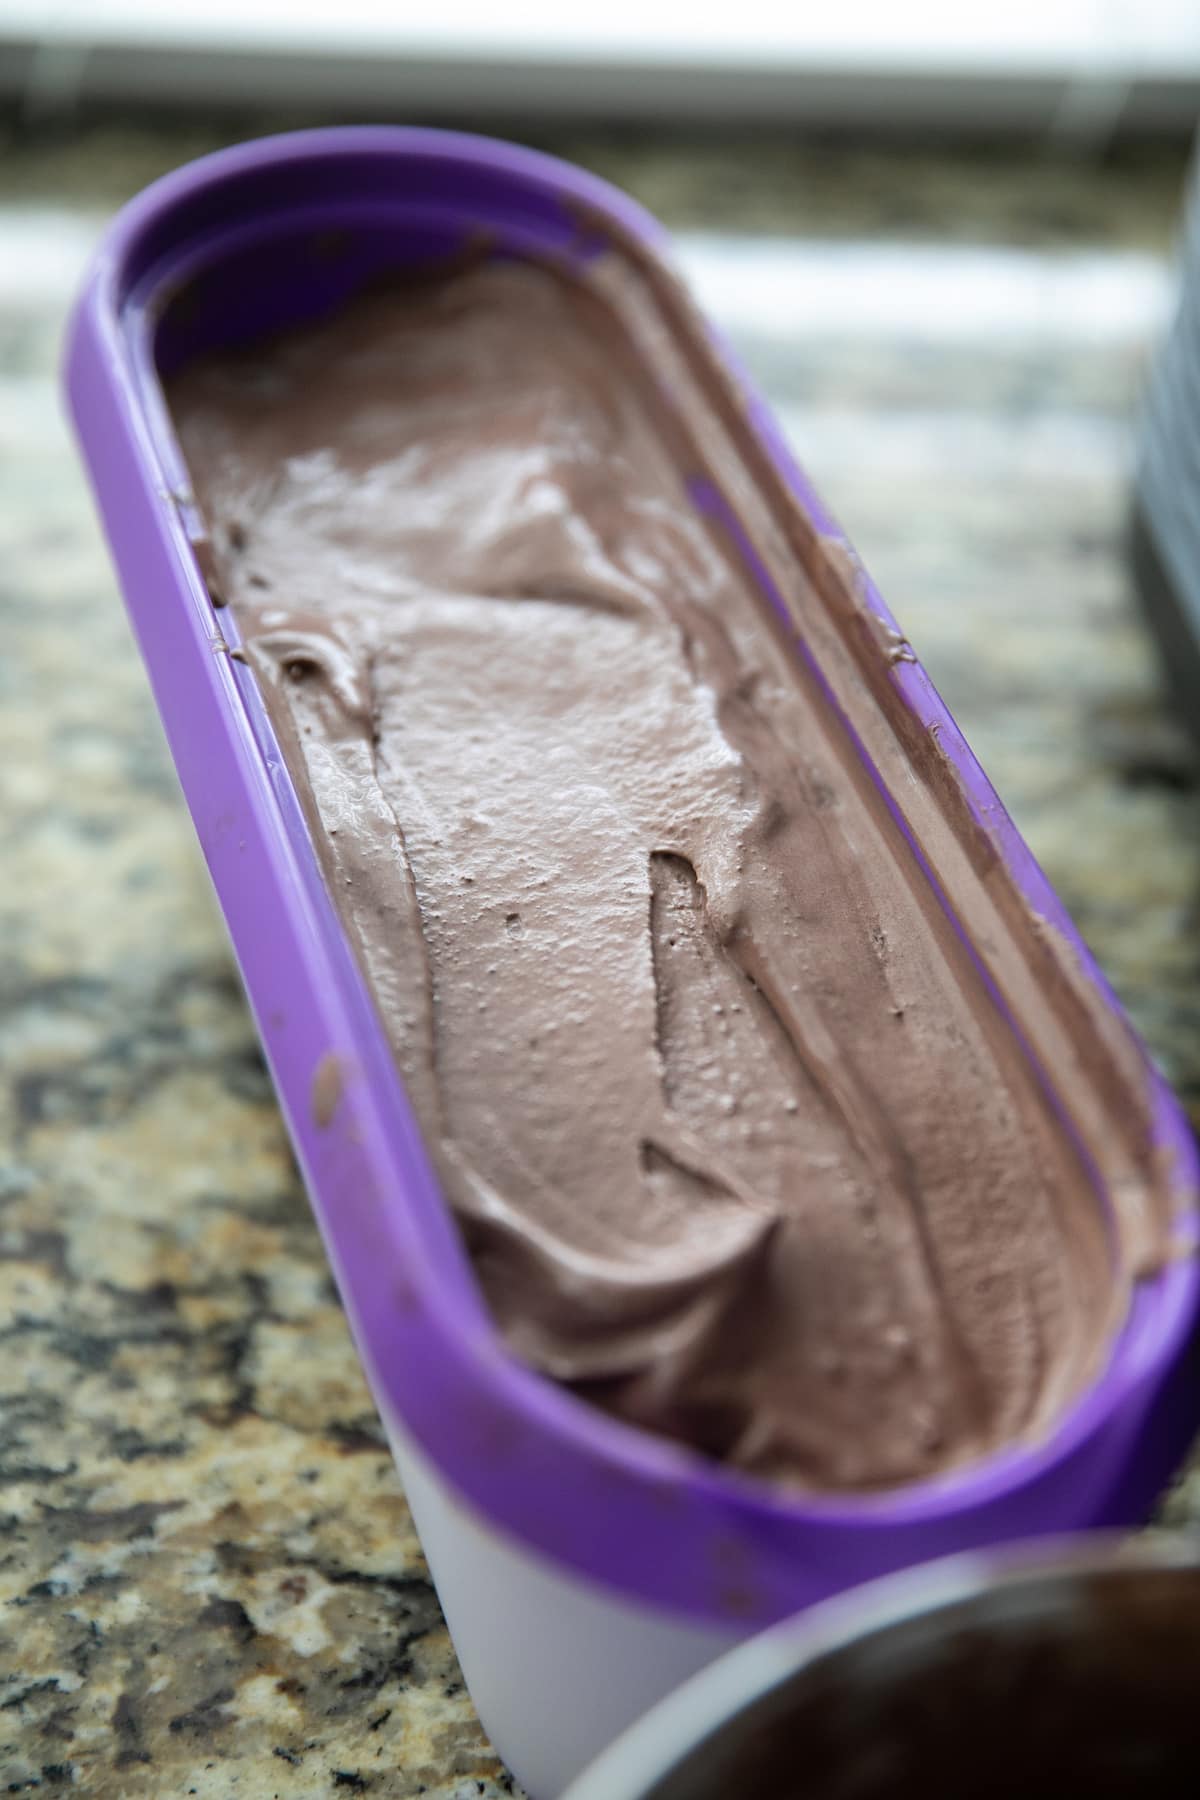 chocolate ice cream in purple plastic container